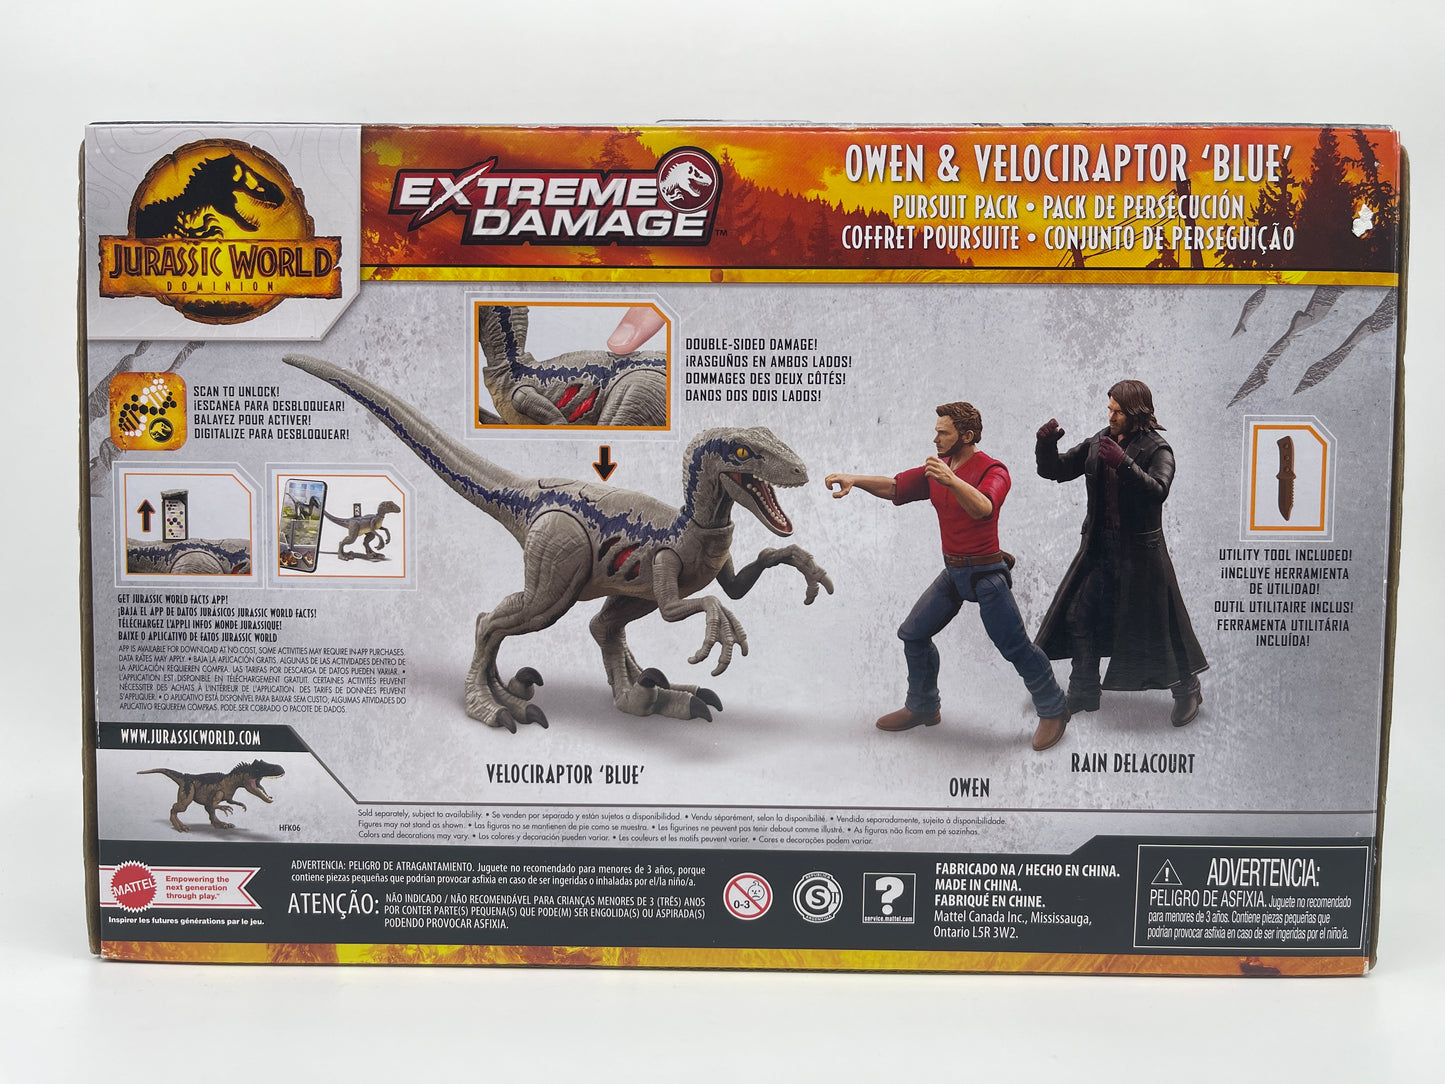 Jurassic World Dominion "Owen & Velociraptor Blue Pursuit Pack" Extreme Damage